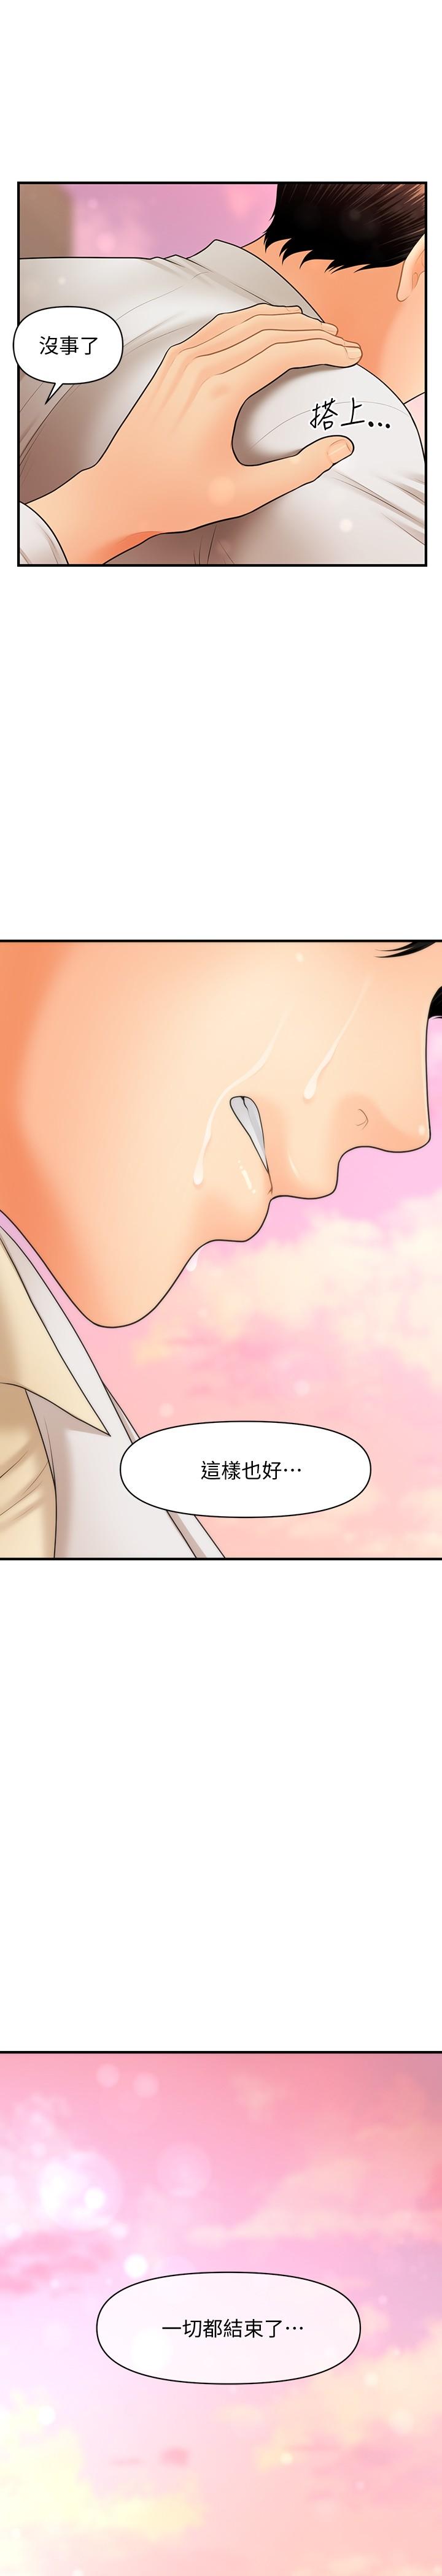 《医美奇鸡》漫画 第41话 - 爽翻天的性爱服务